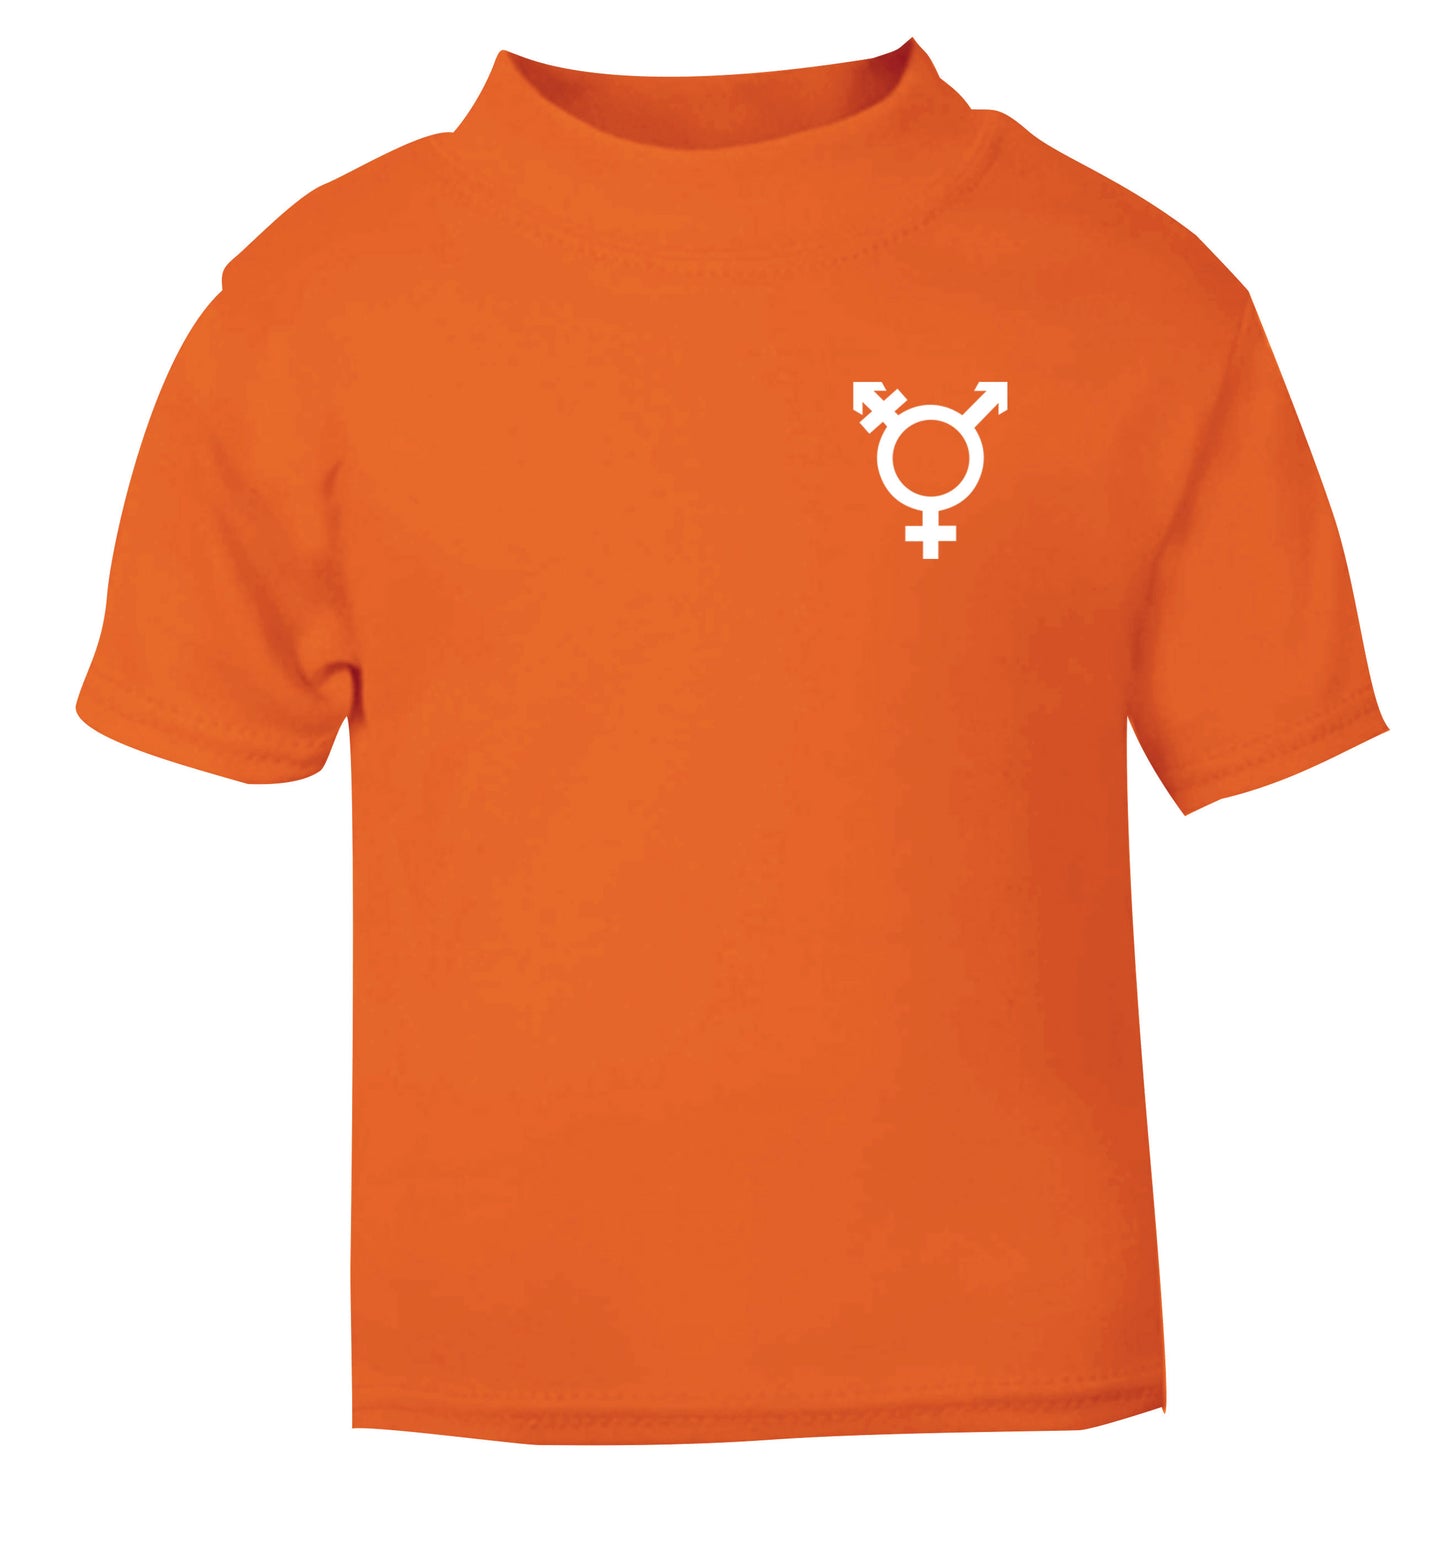 Trans gender symbol pocket orange Baby Toddler Tshirt 2 Years